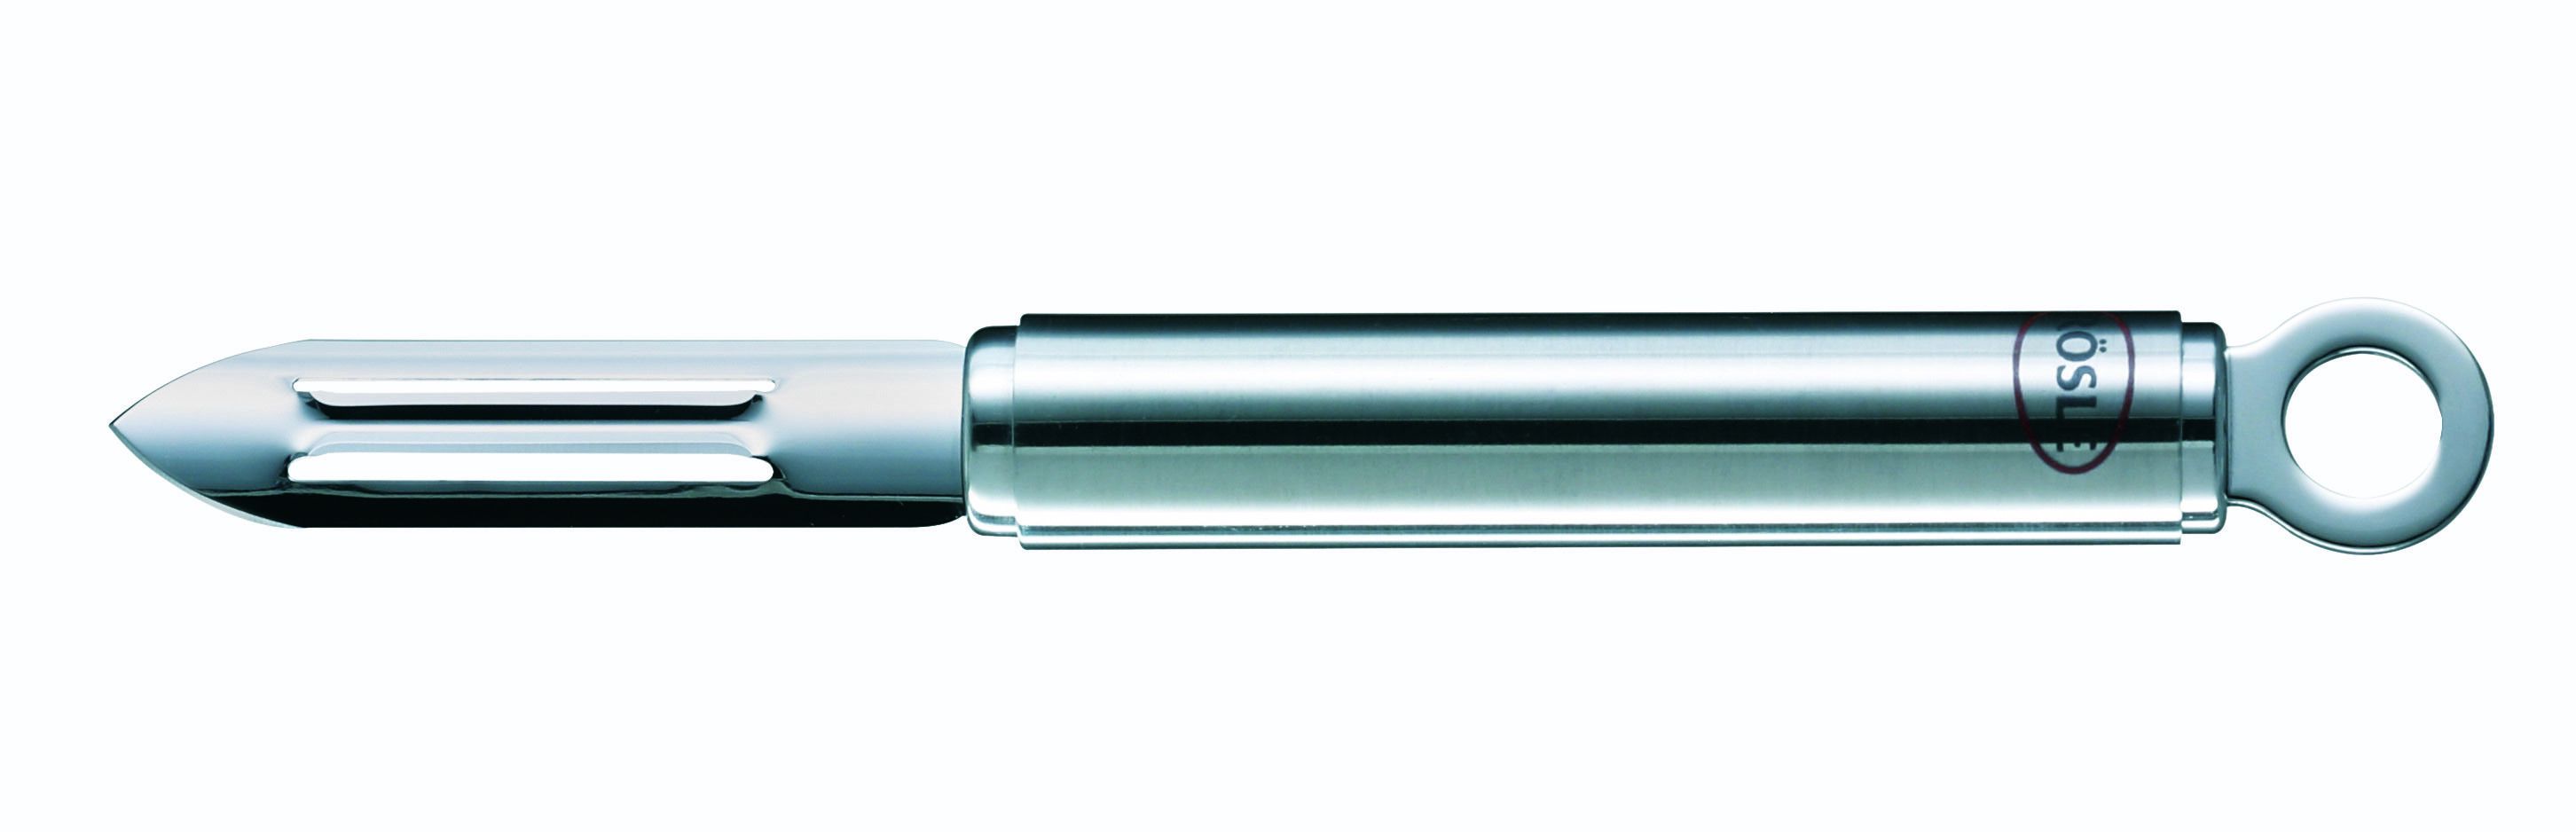 Gaan vertrekken Herziening Rosle Dunschiller Round - RVS - 19 cm kopen? | Cookinglife